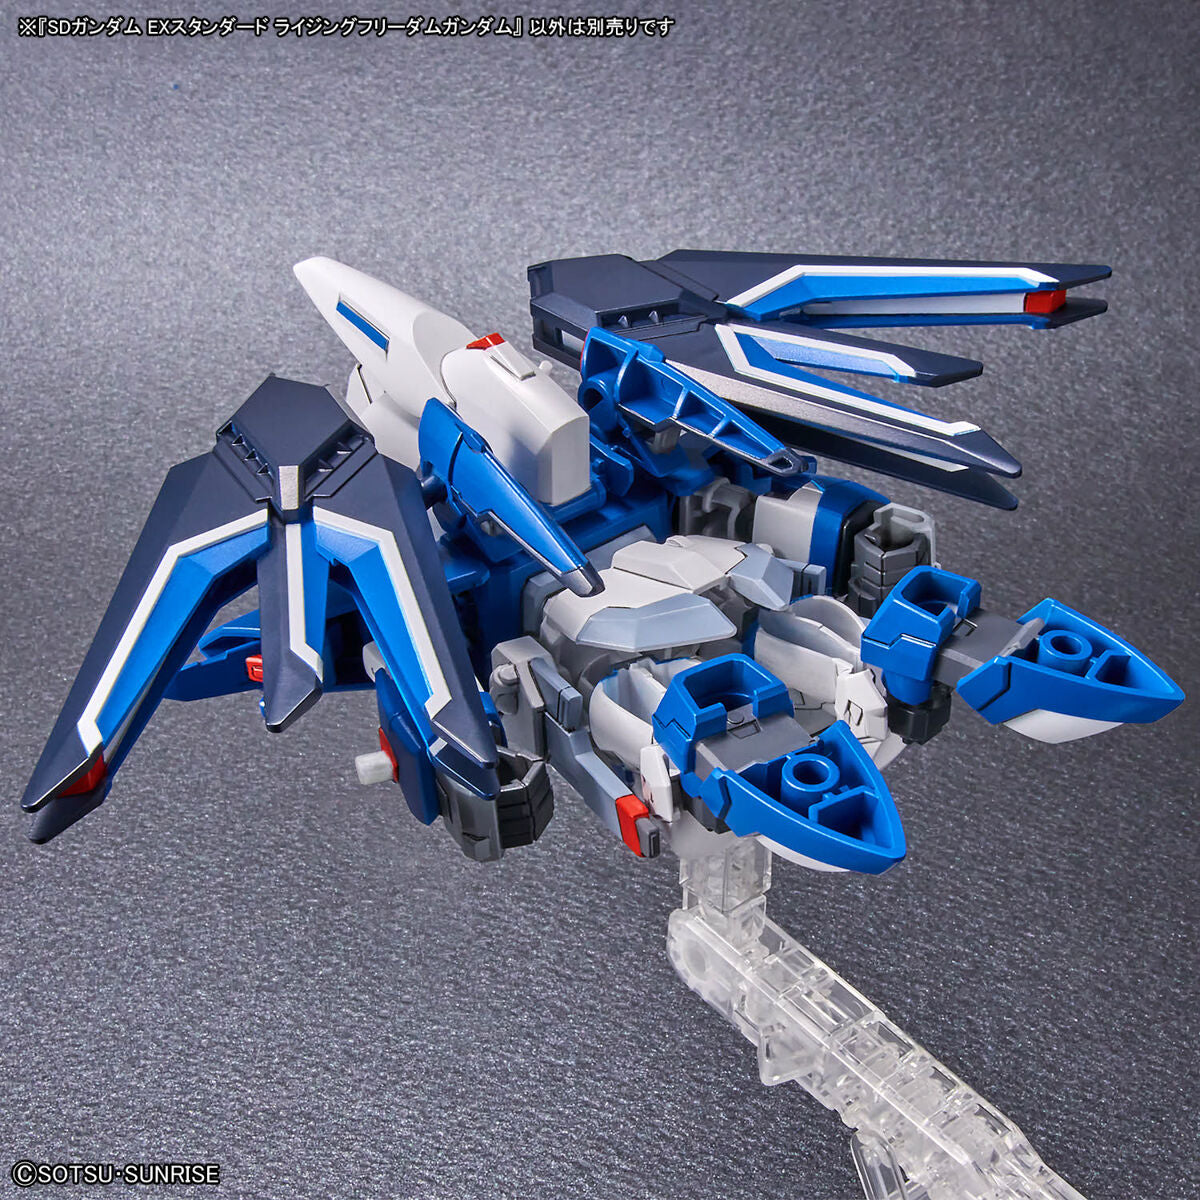 Bandai SDEX 016 Rising Freedom Gundam Plastic Model Kit